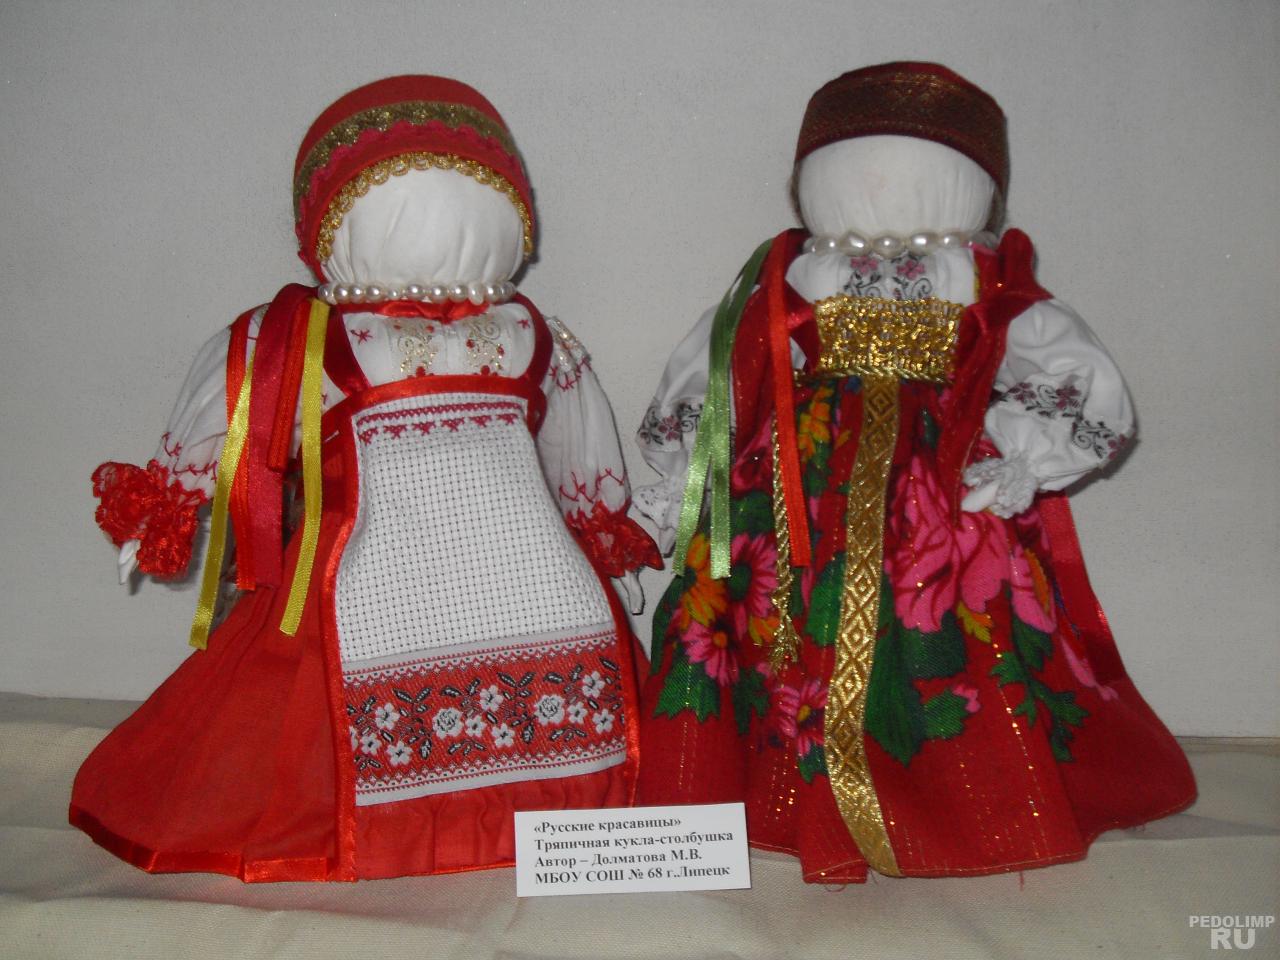 Куклы в народных костюмах – Новые образы своими руками. Фото и обсуждение